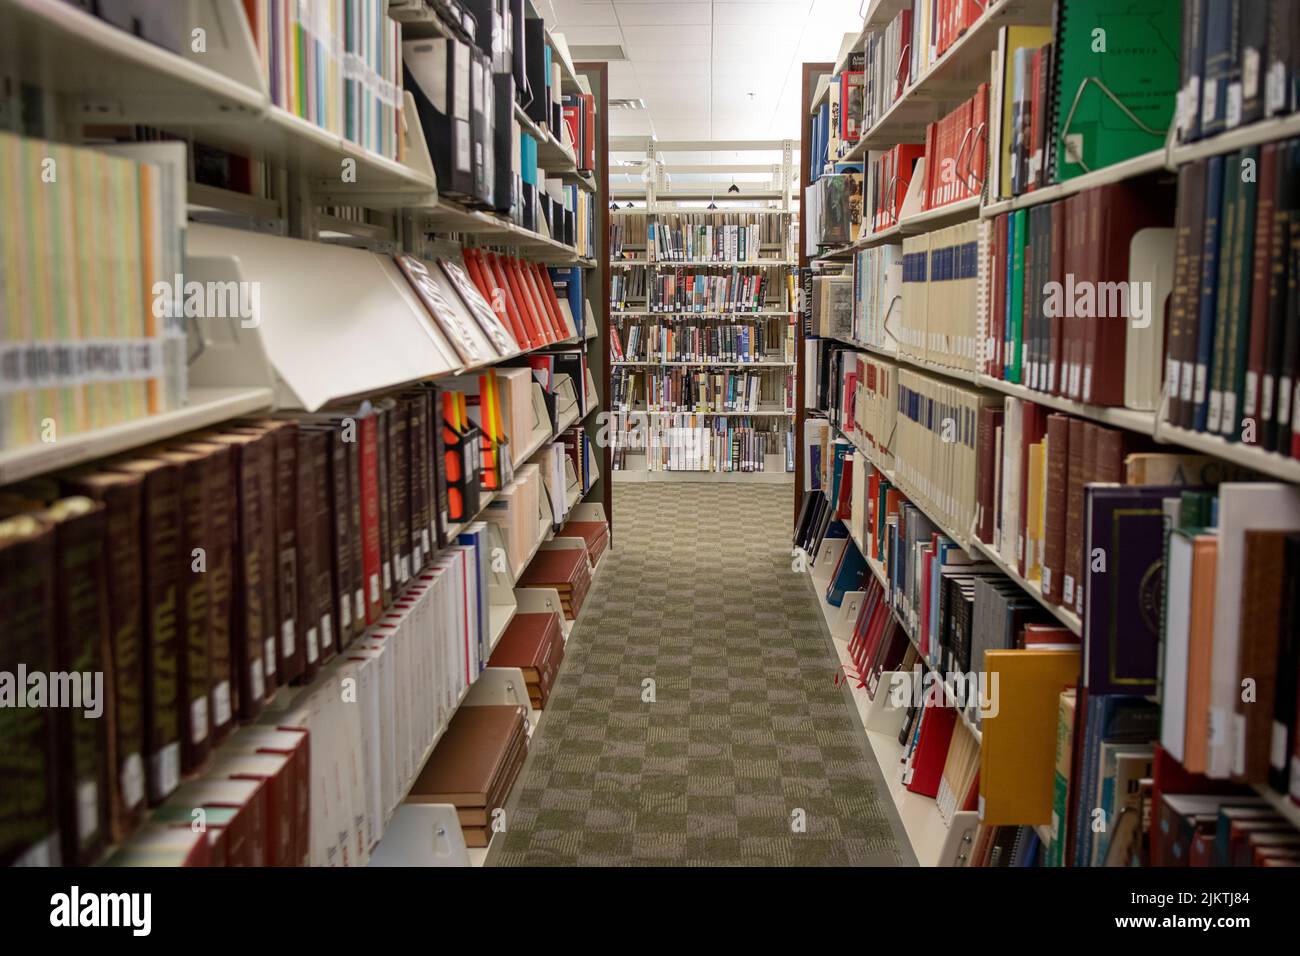 Columbia County, GA USA - 08 20 21: Columbia County Public Library interior file di libri su un corridoio Foto Stock